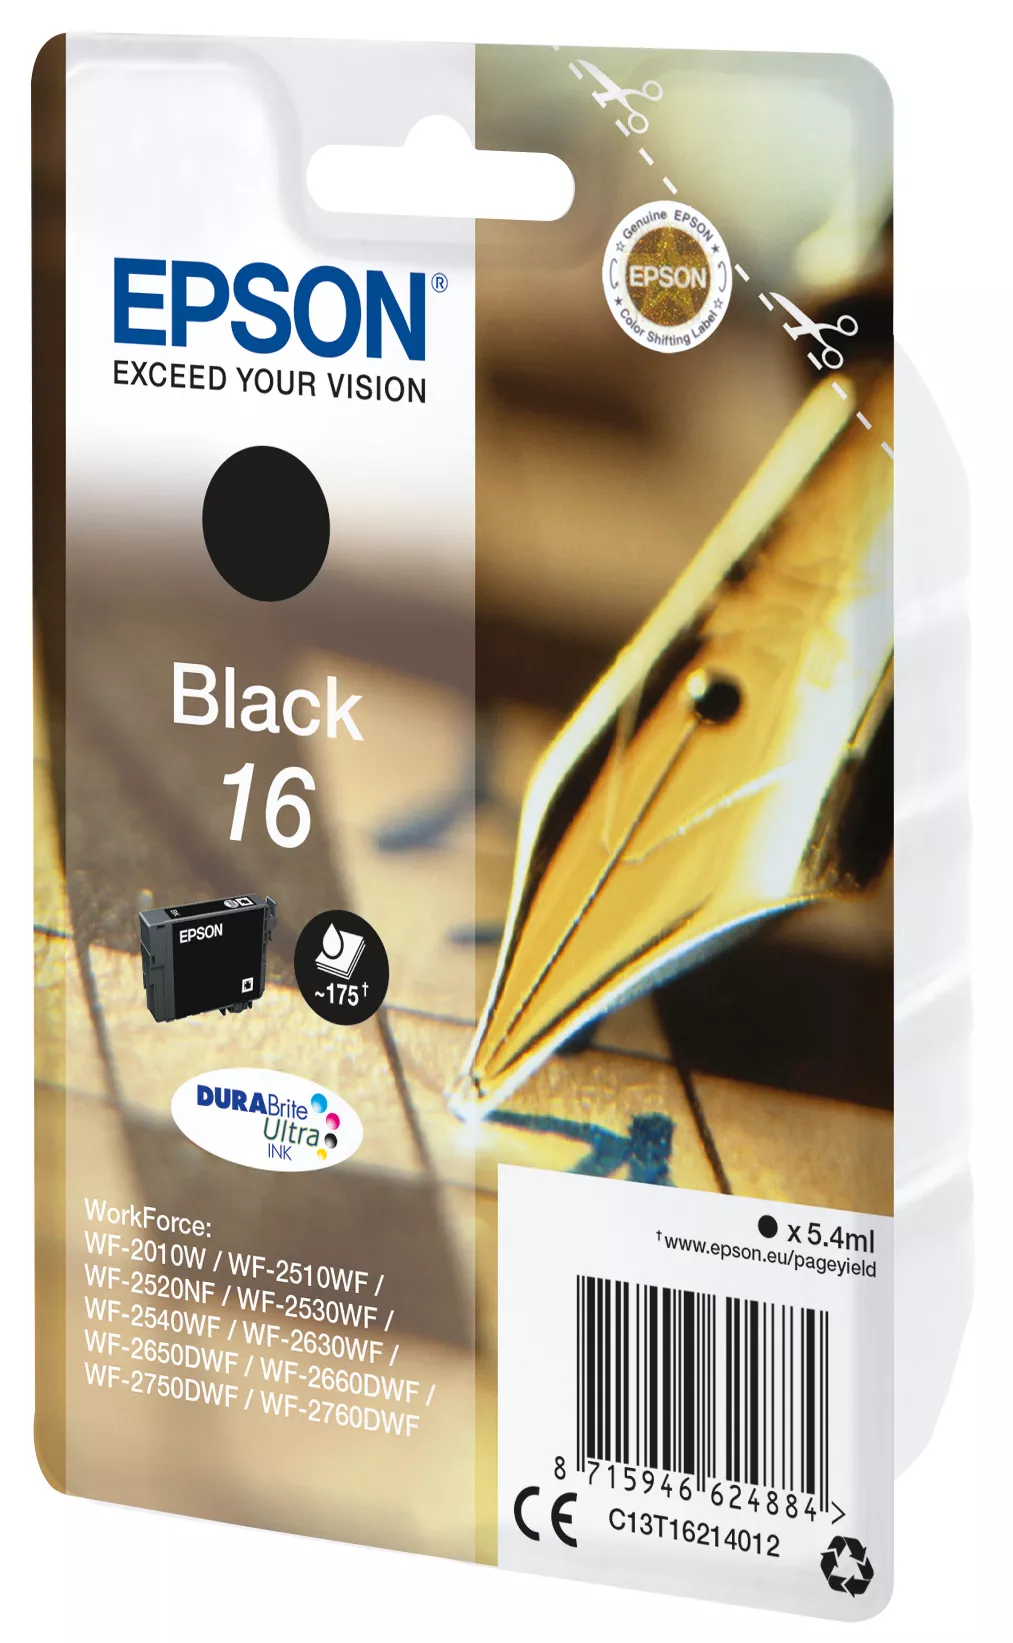 Vente EPSON 16 cartouche encre noir capacité standard 5.4ml Epson au meilleur prix - visuel 2